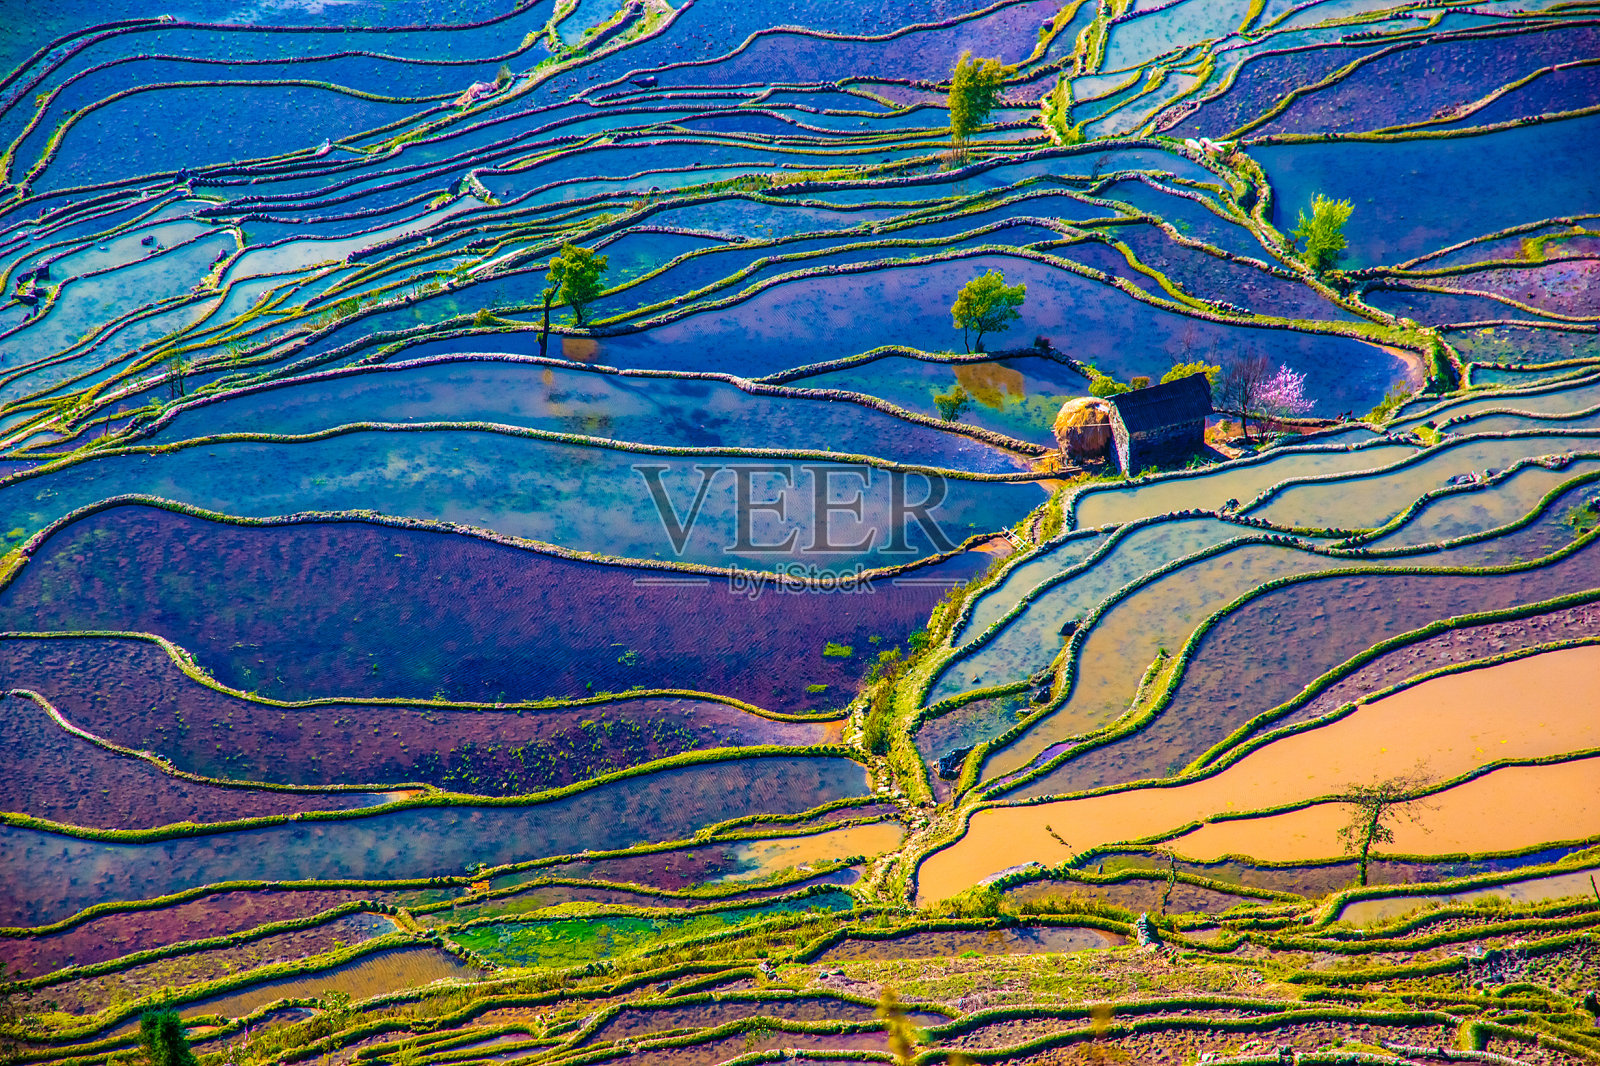 中国南方的稻田被淹照片摄影图片